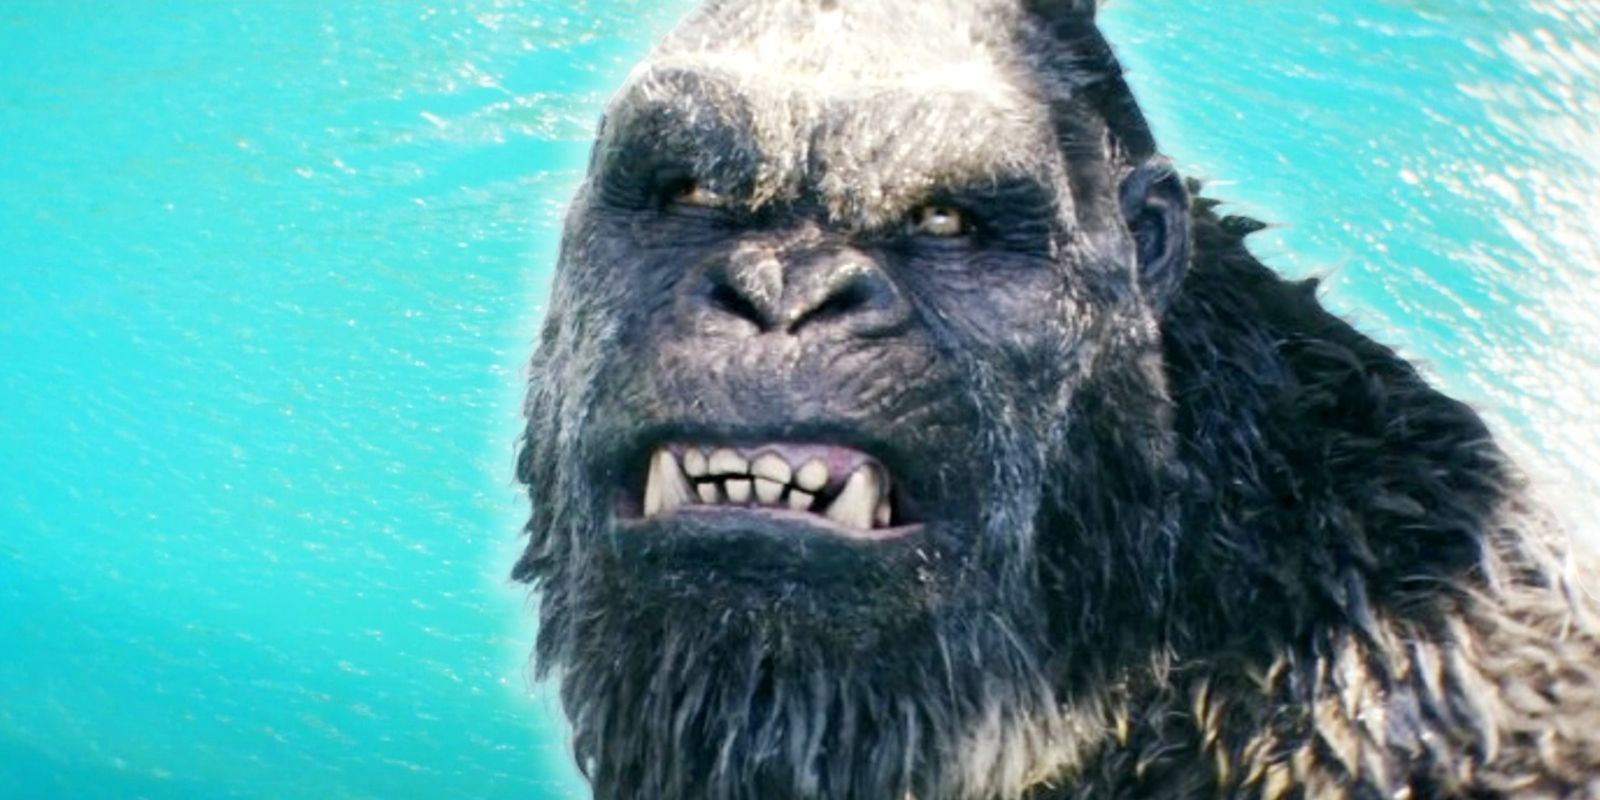 El tráiler de Godzilla x Kong muestra los orígenes de la lesión de Kong mientras lucha contra Skar King